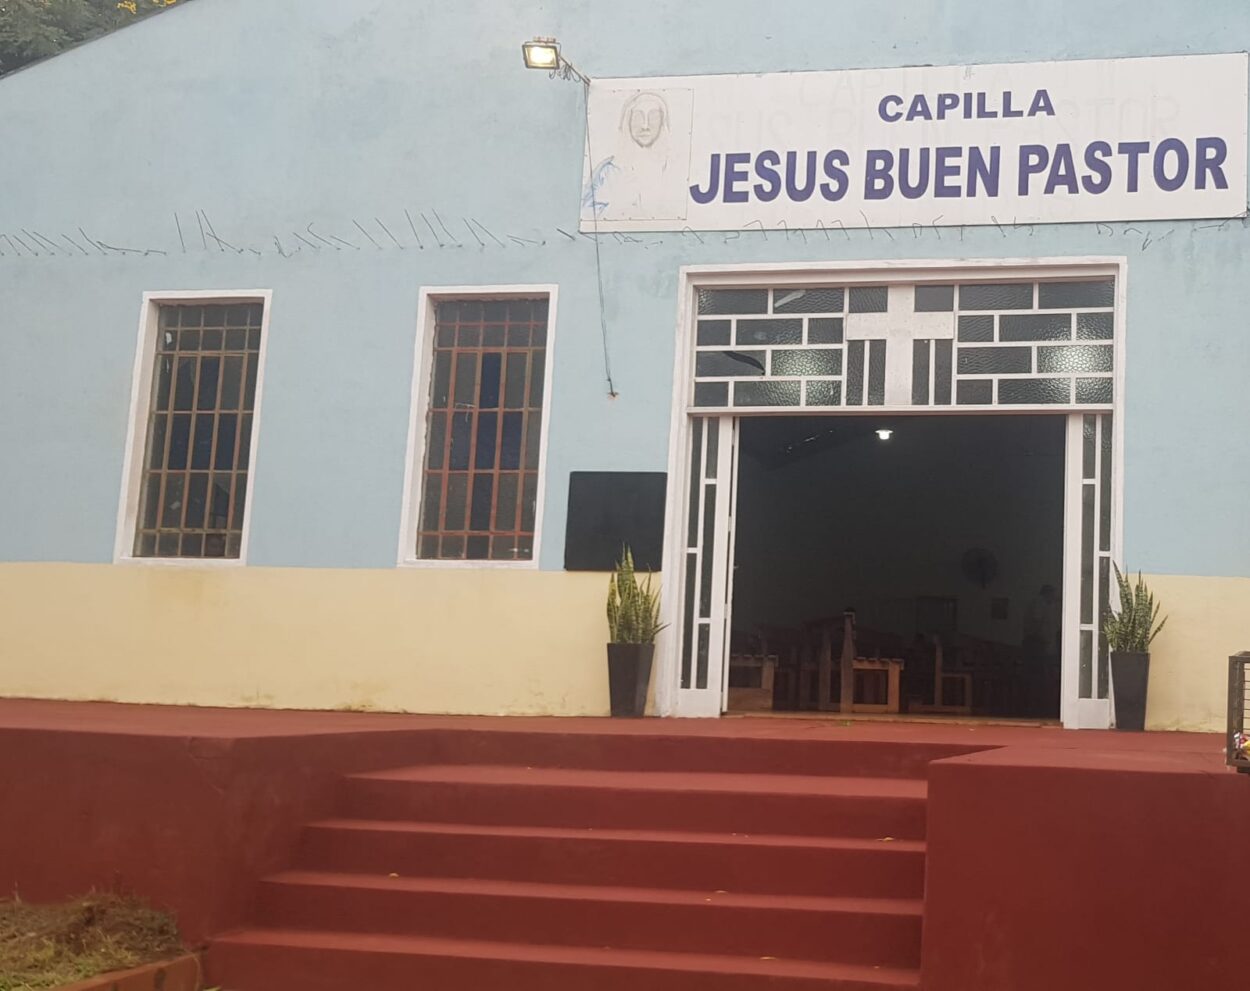 Capilla “Jesús Buen Pastor” celebrará su fiesta patronal este domingo 21 imagen-61